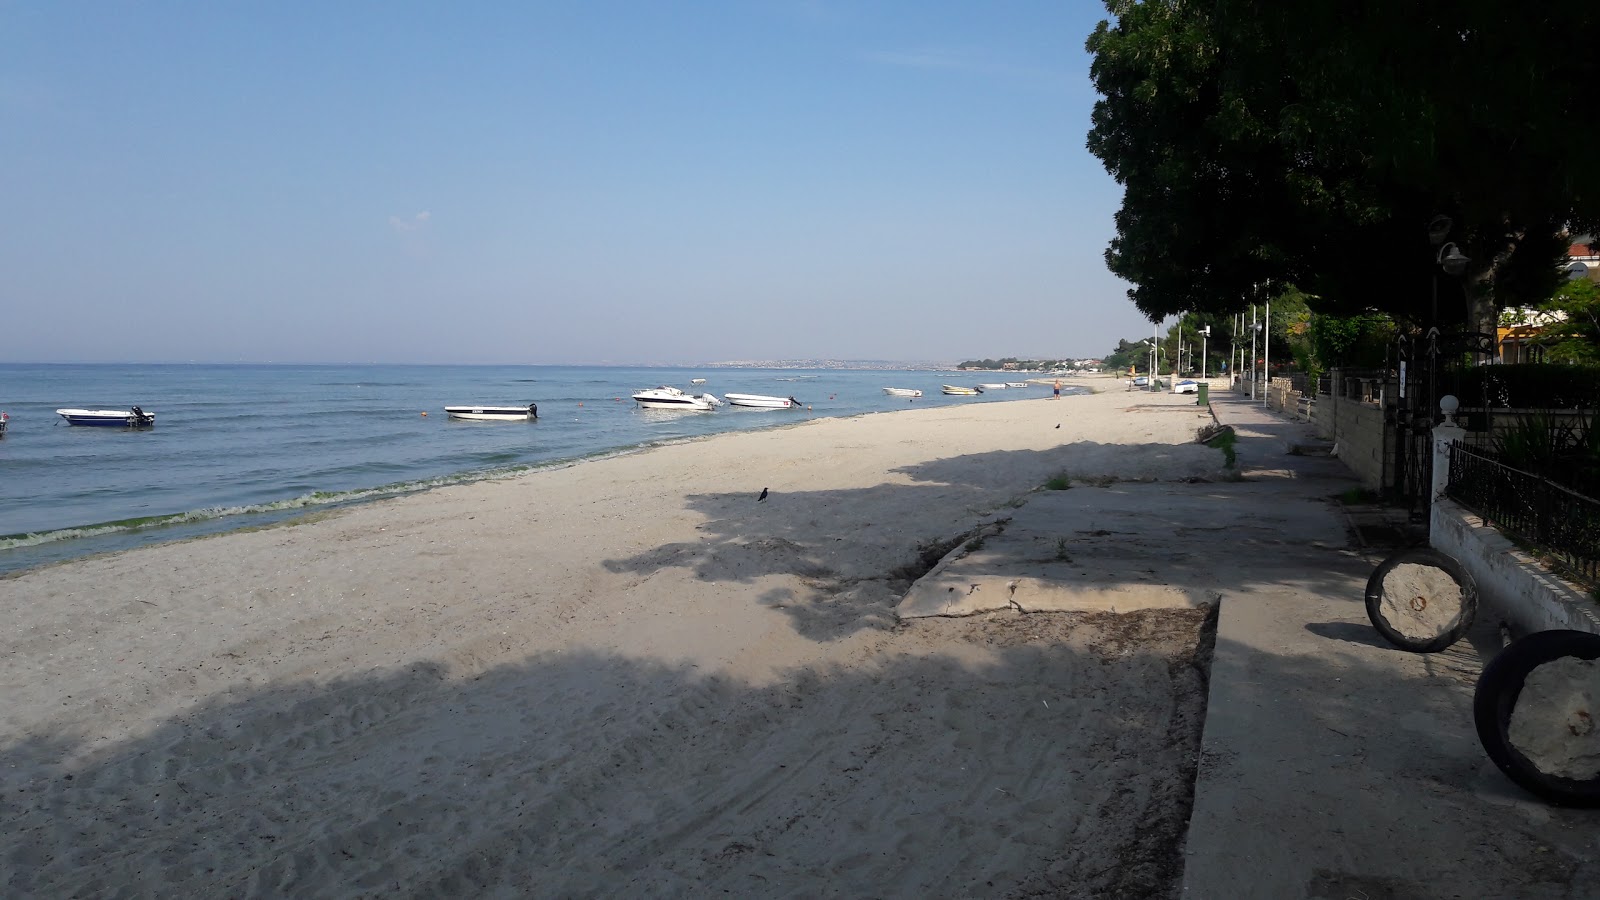 Ataturk Parkı Plajı'in fotoğrafı geniş plaj ile birlikte